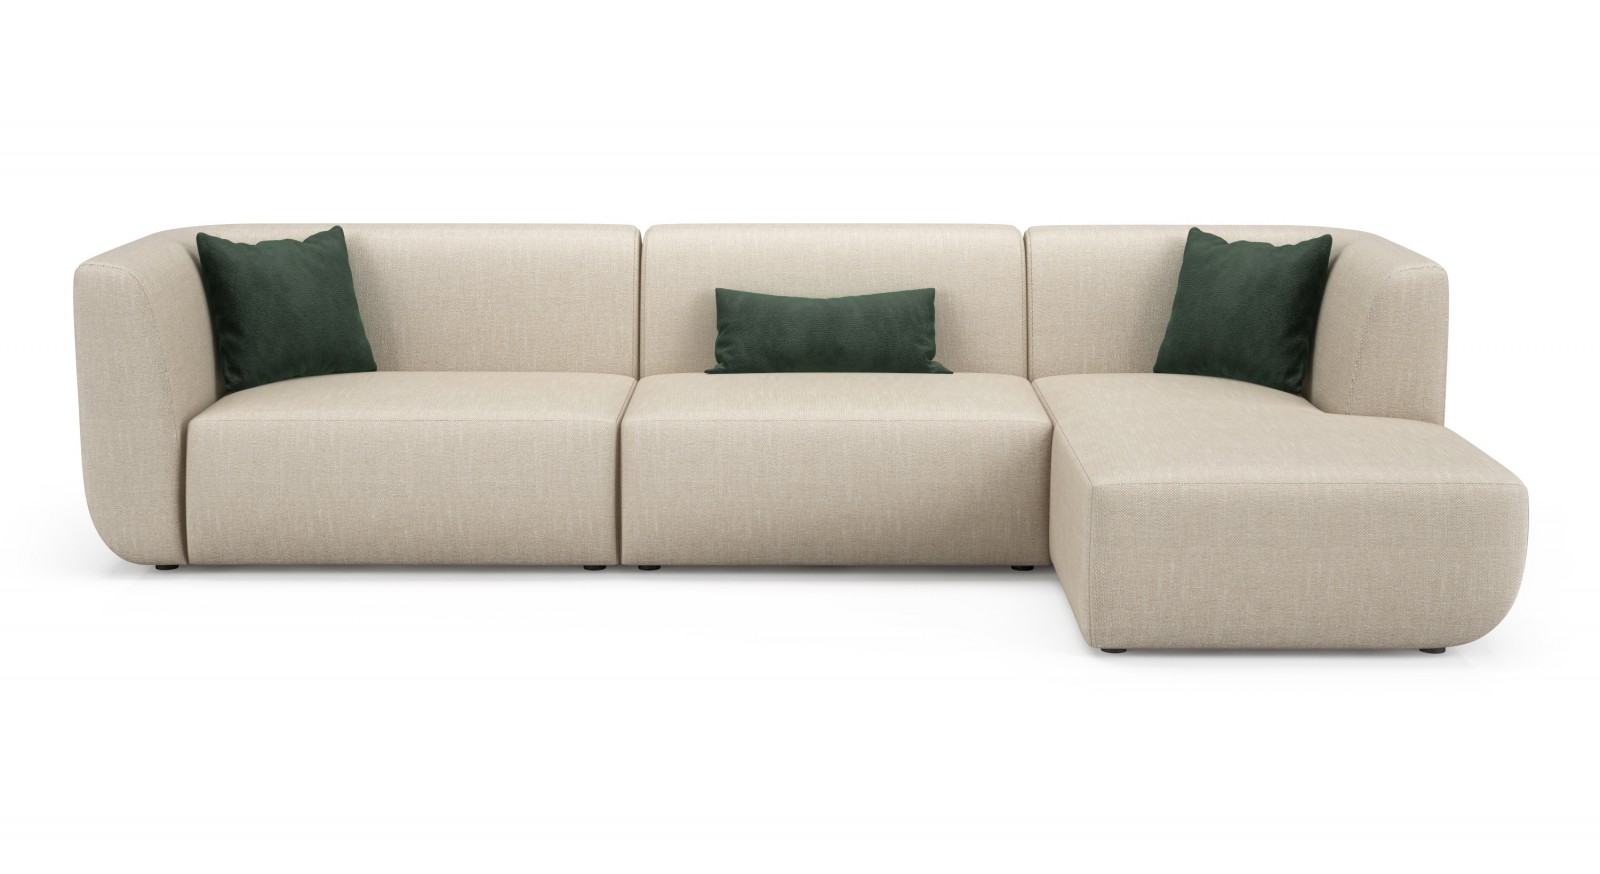 120 1/2" Modular Sofa